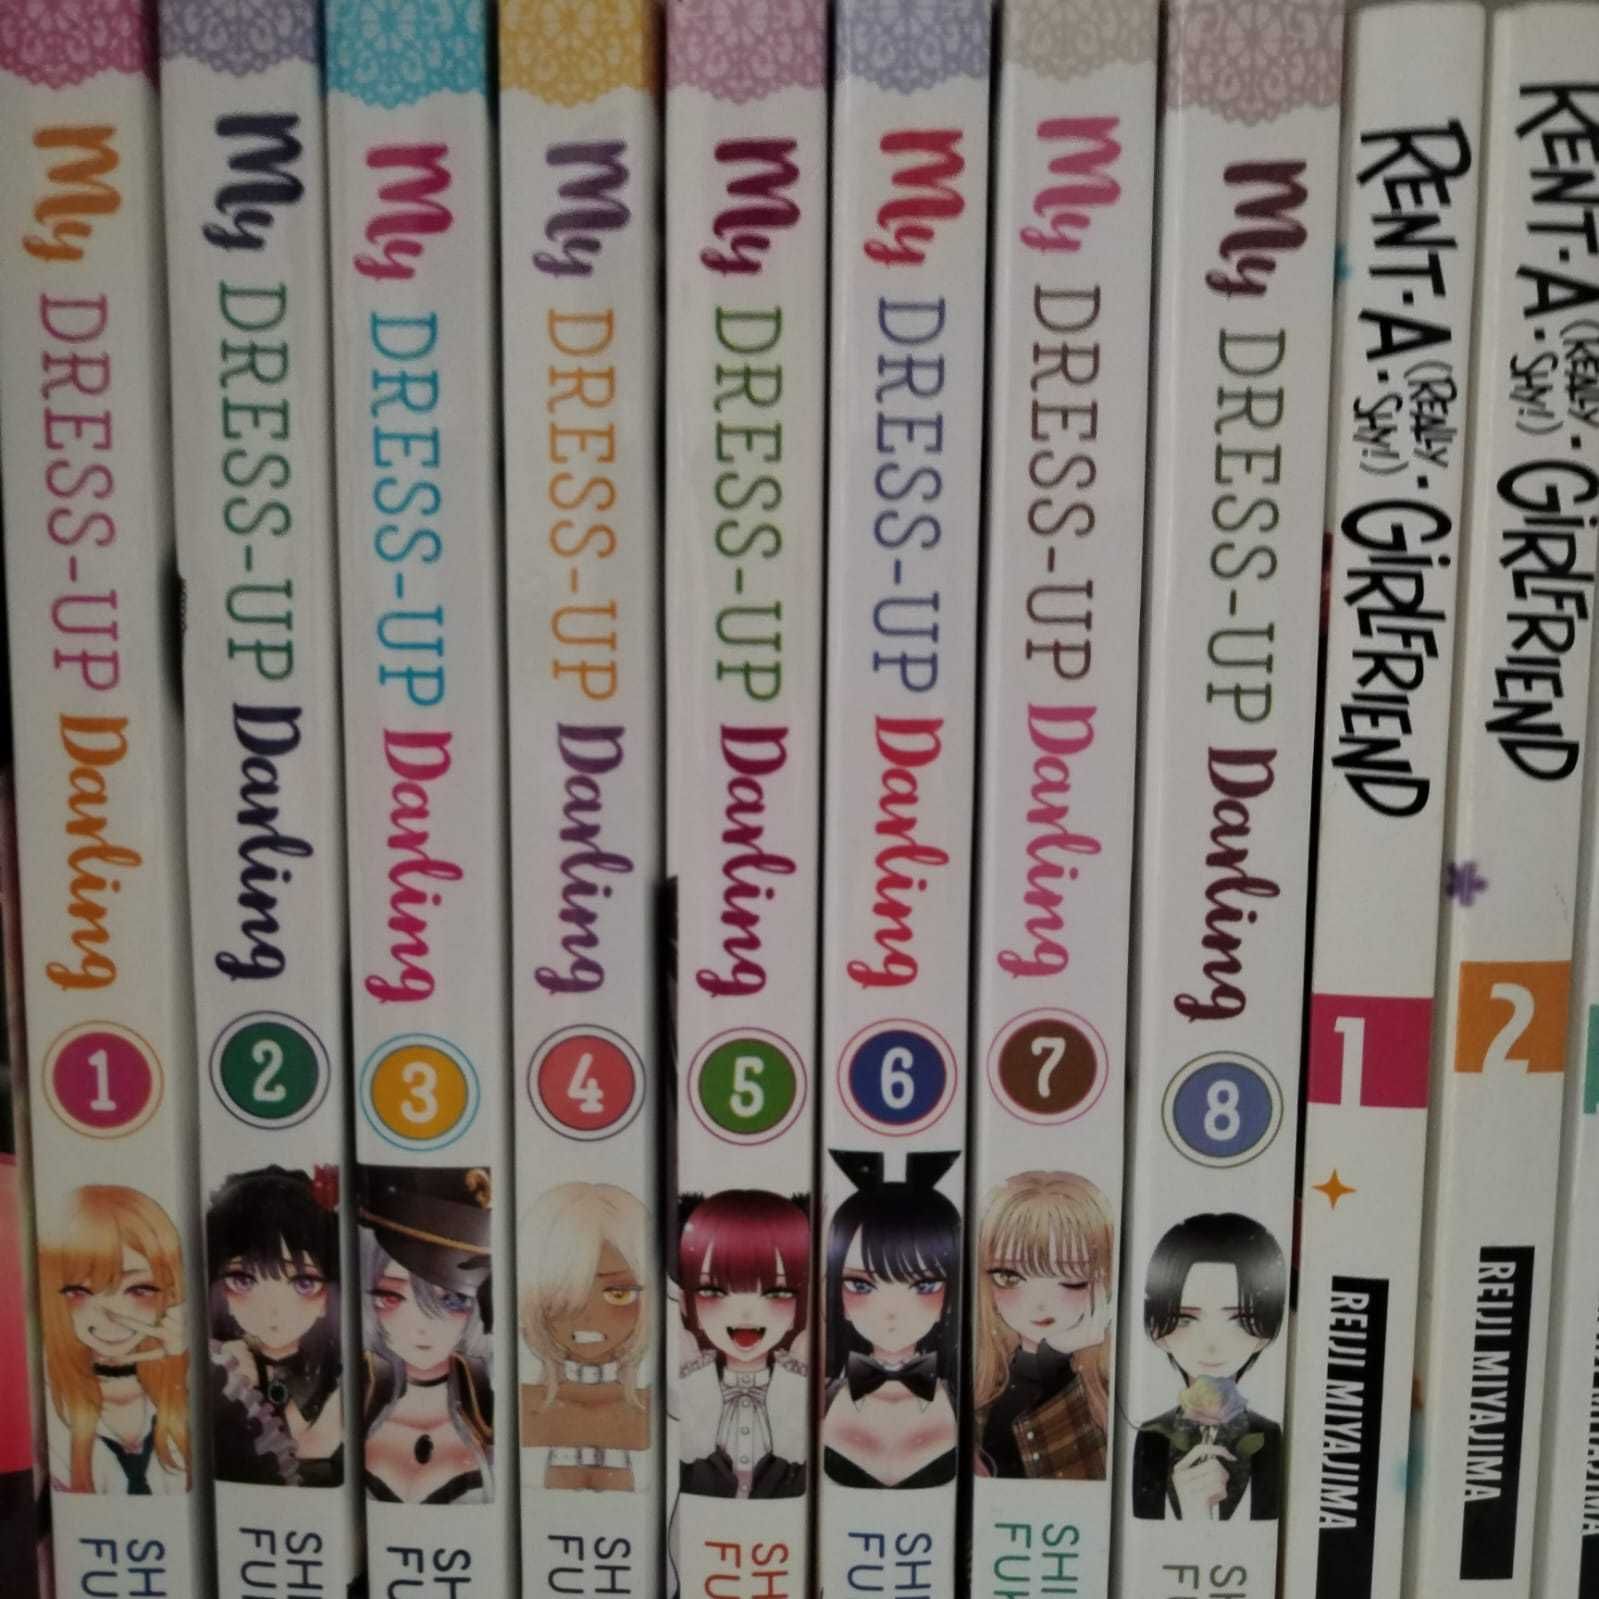 Vand manga (poze cu mai multe serii in celelalte anunturi)